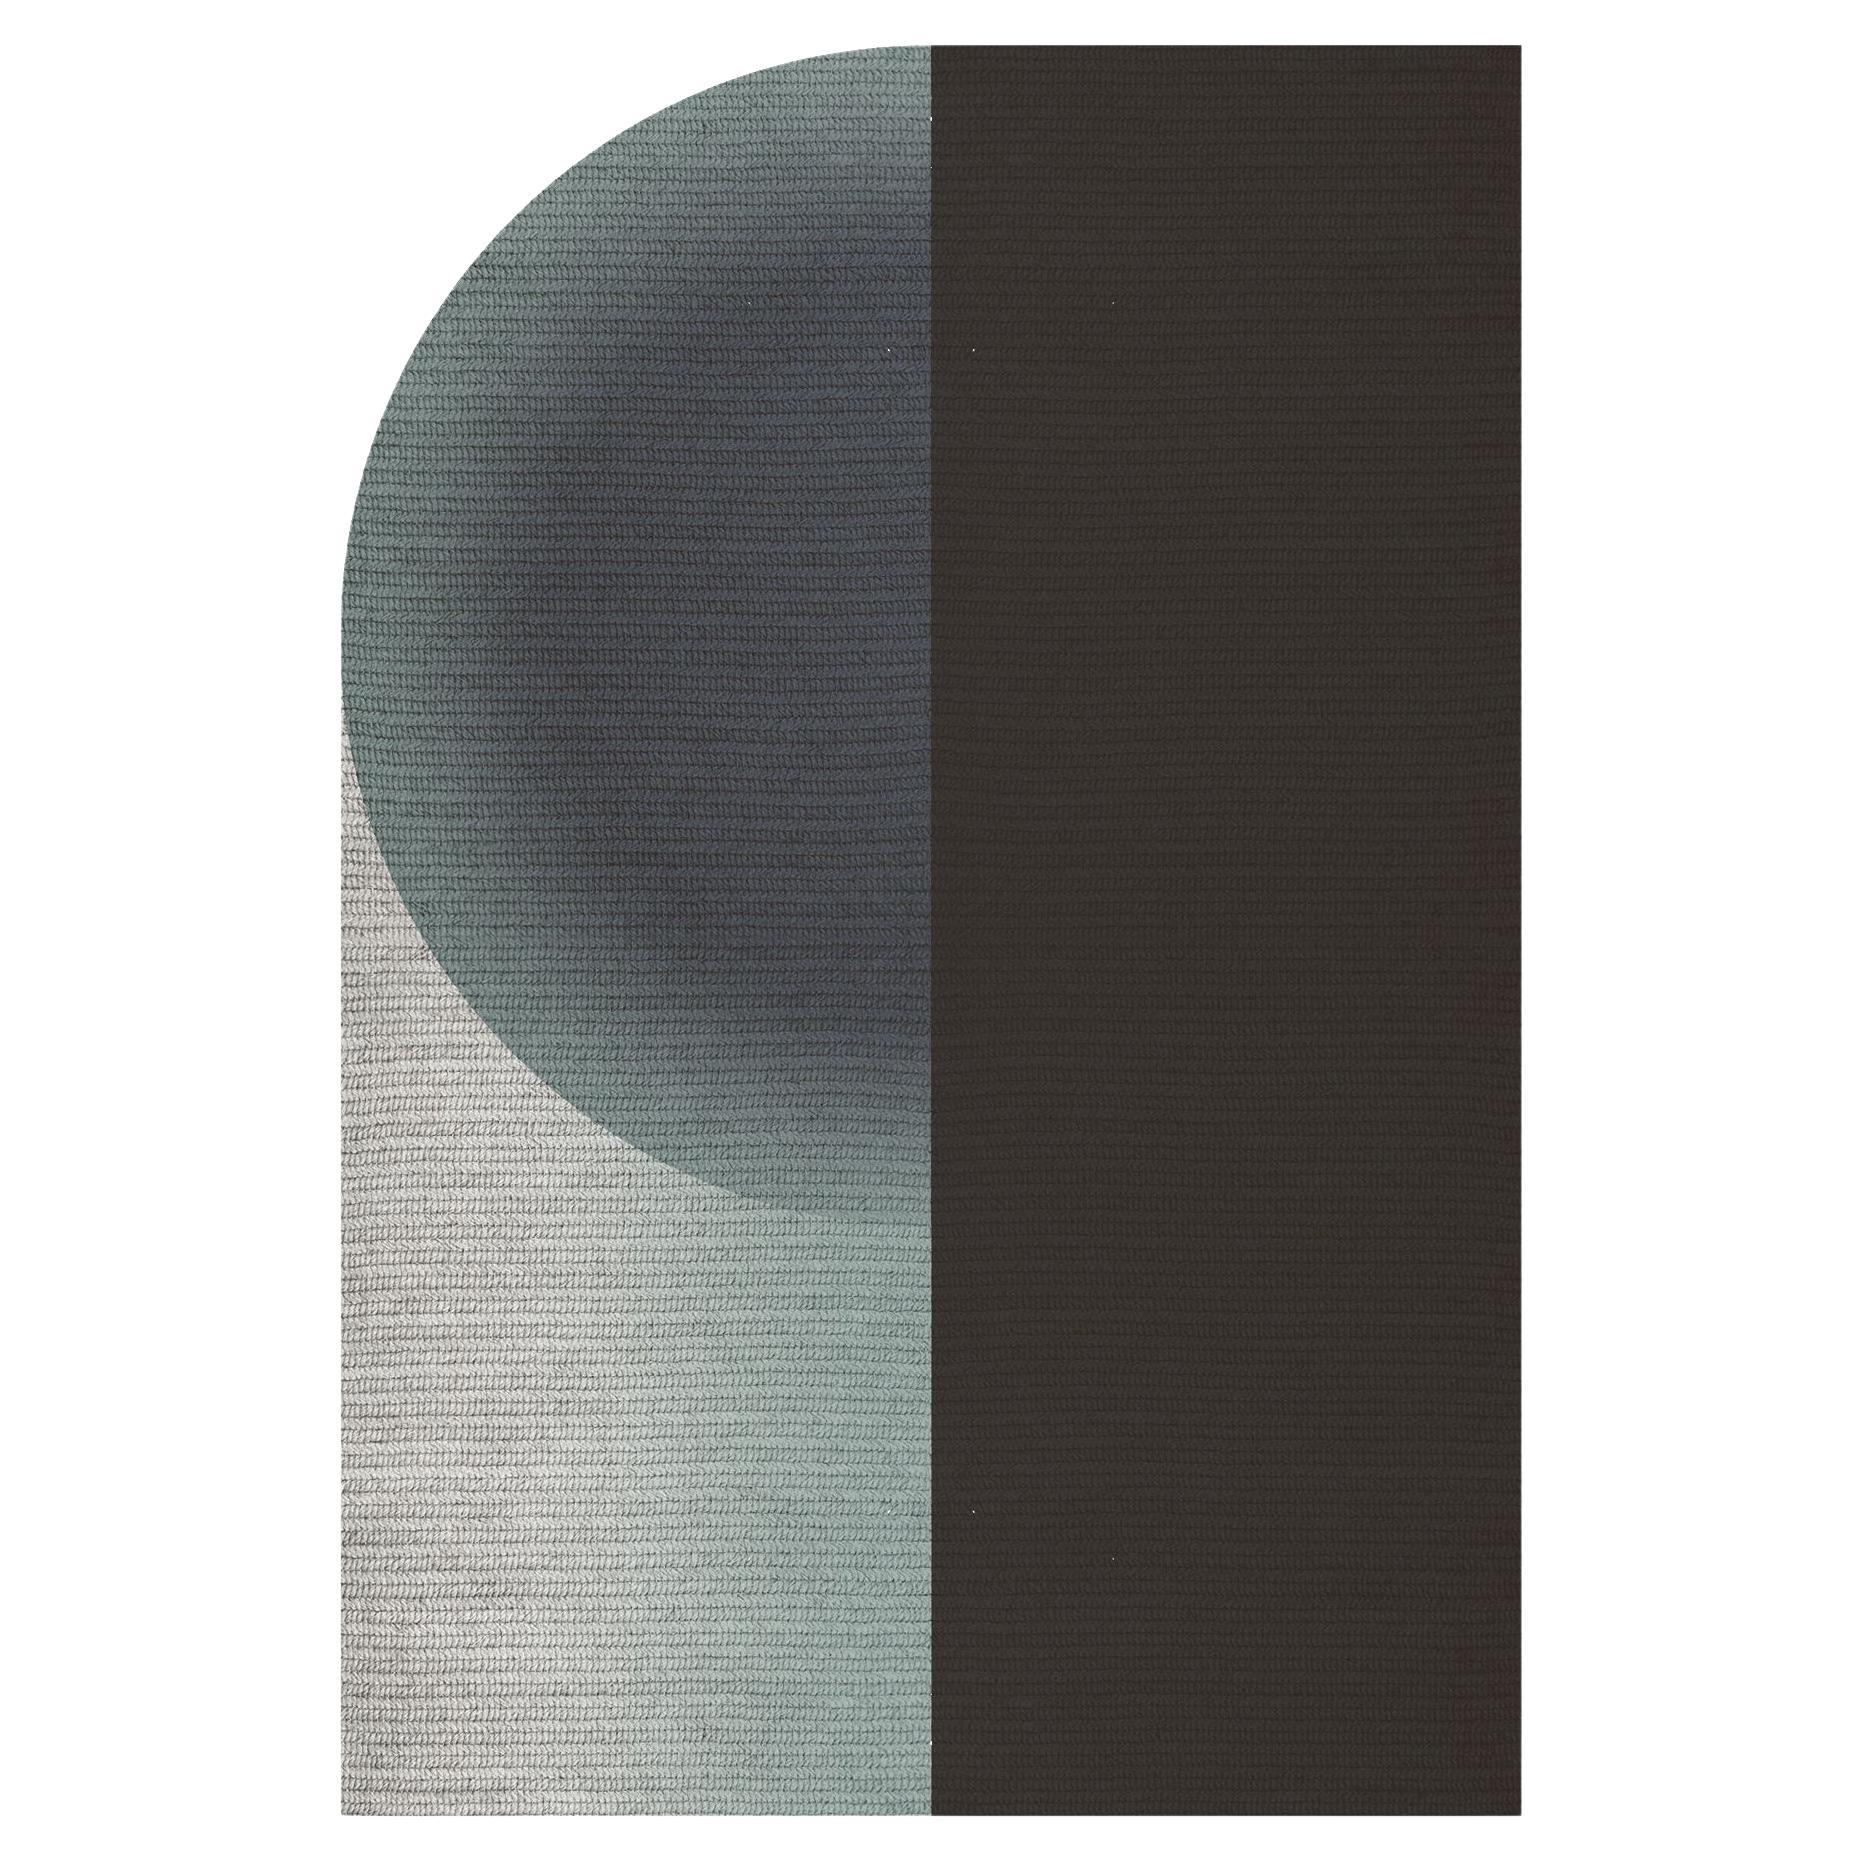 Claire Vos für Musett 'Glow' Abaca Indoor-Teppich aus Sterling, 160 x 240 cm